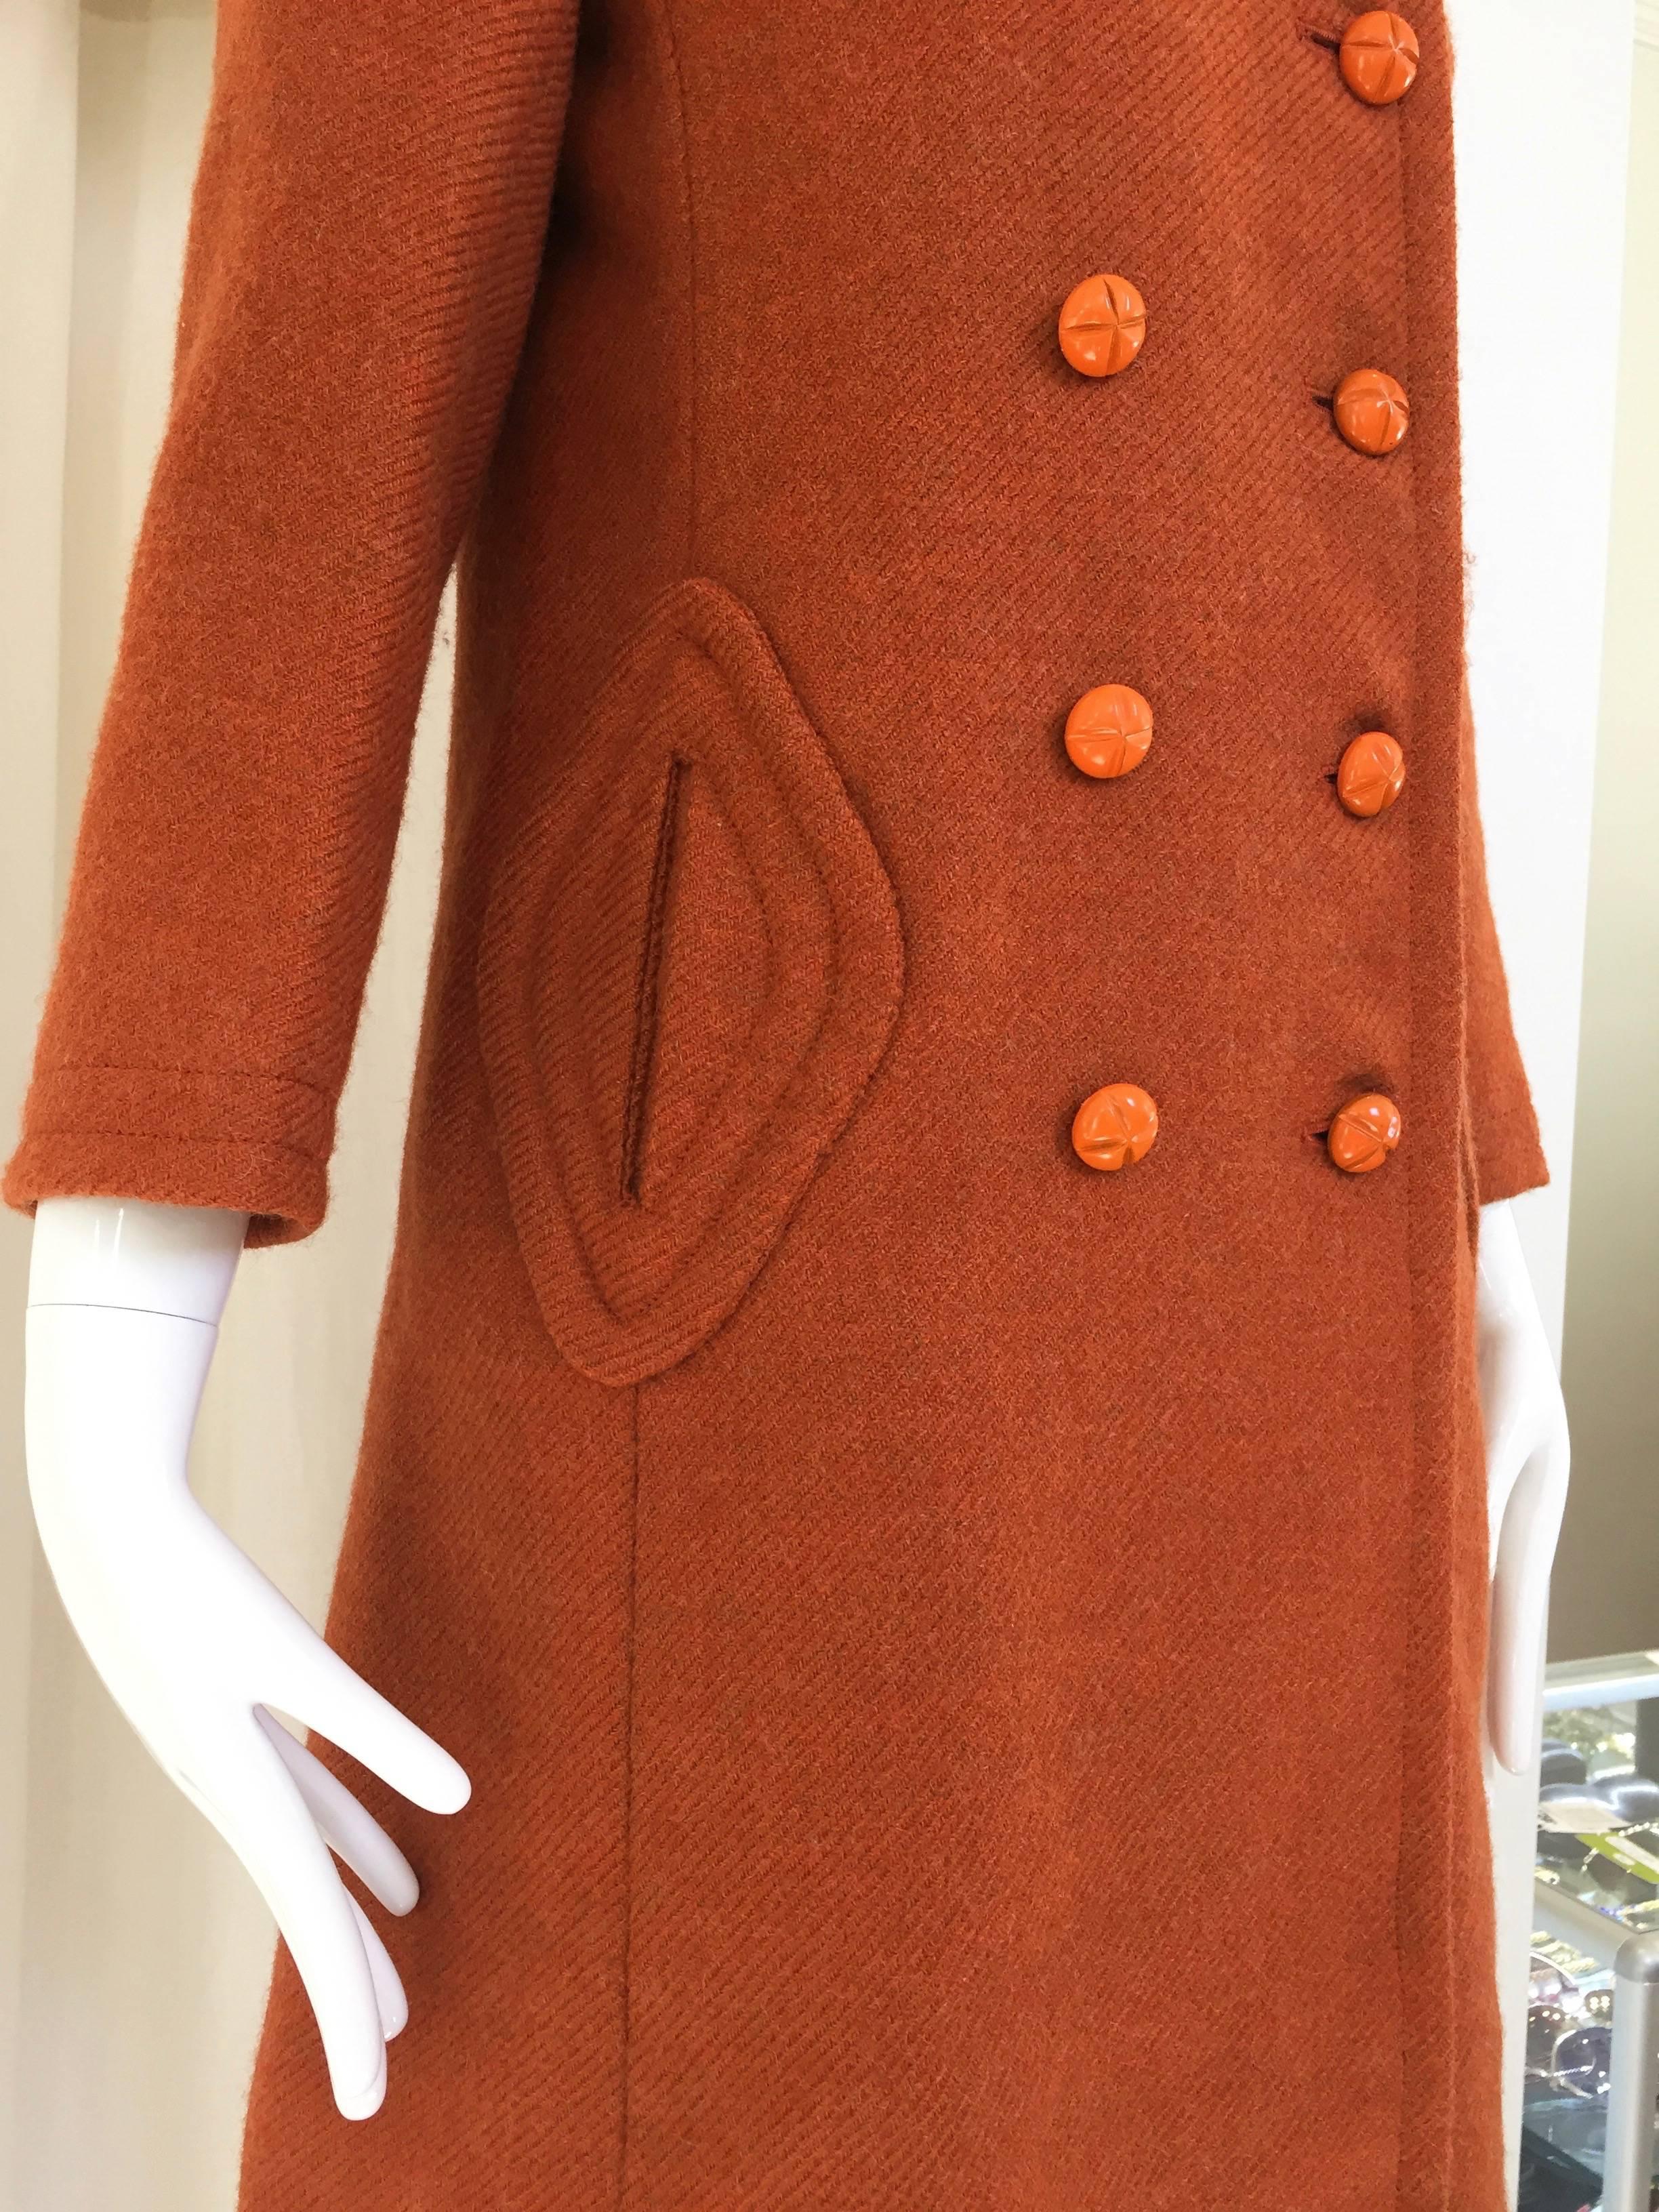 70s Pierre Cardin burnt orange wool pea coat.
Bust: 35